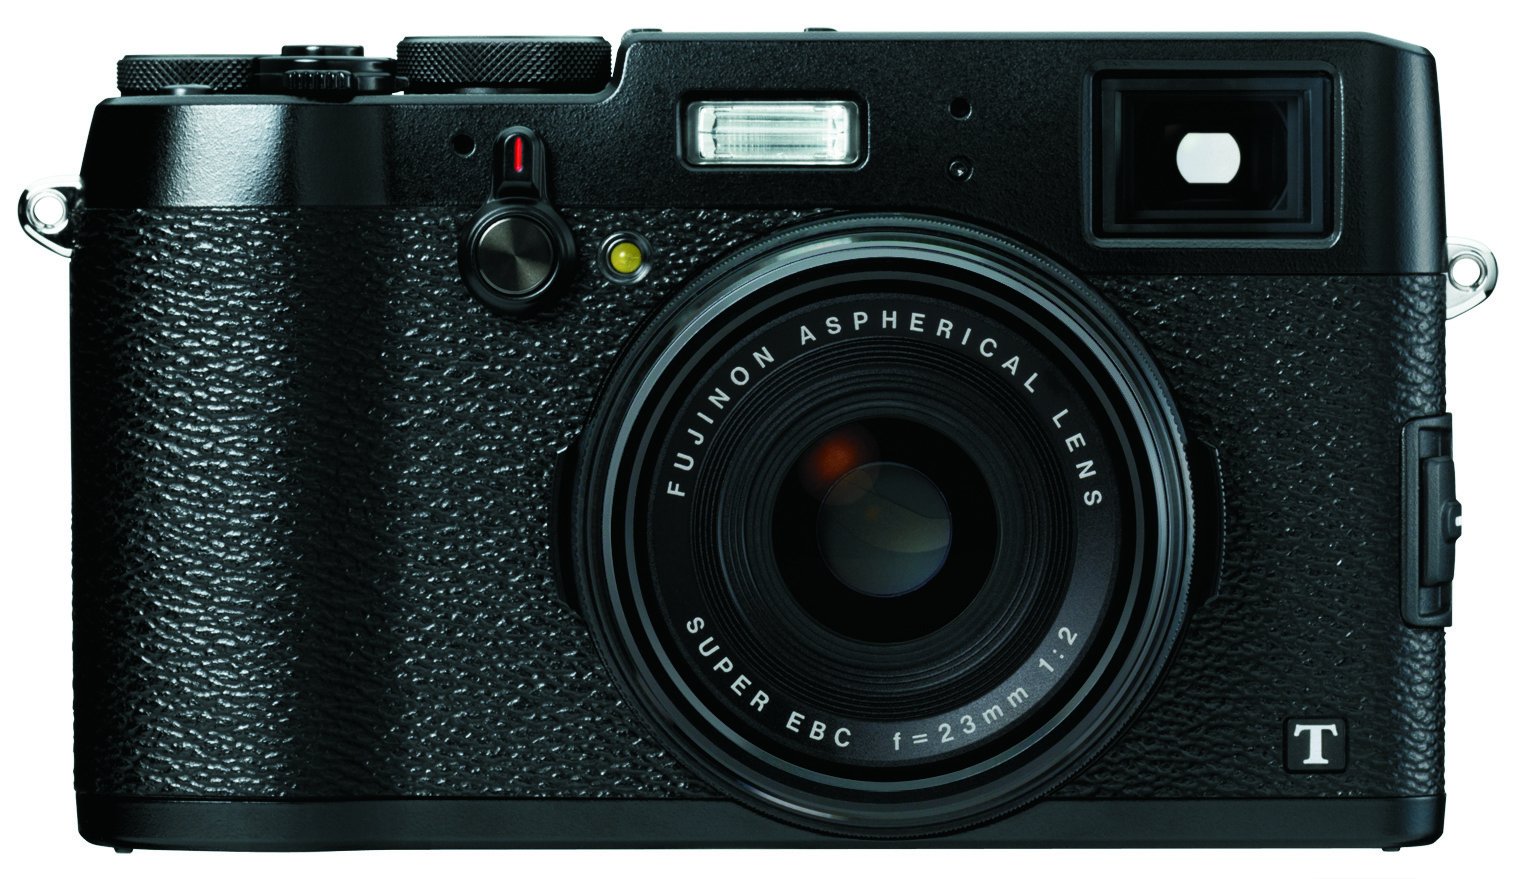 Fujifilm X100T 16 MP Digital Camera (Black)